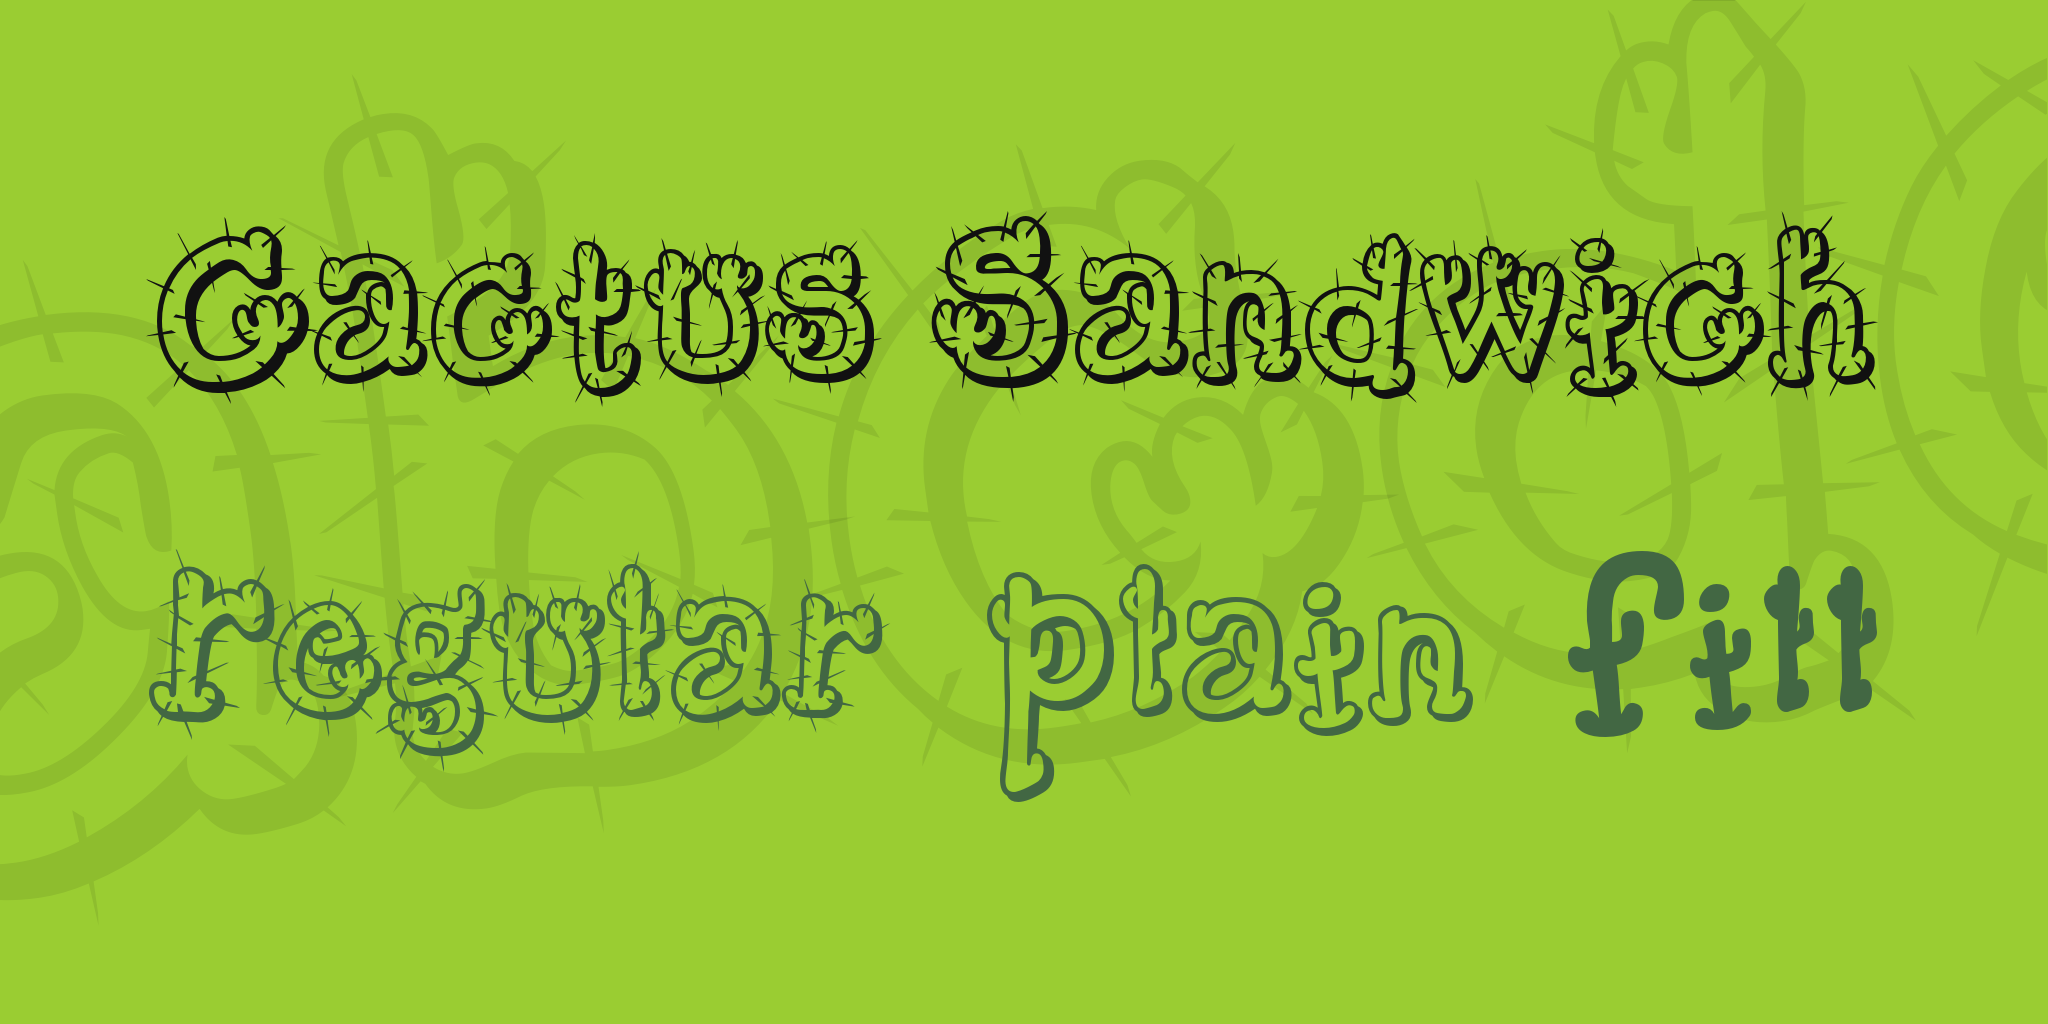 Cactus Sandwich